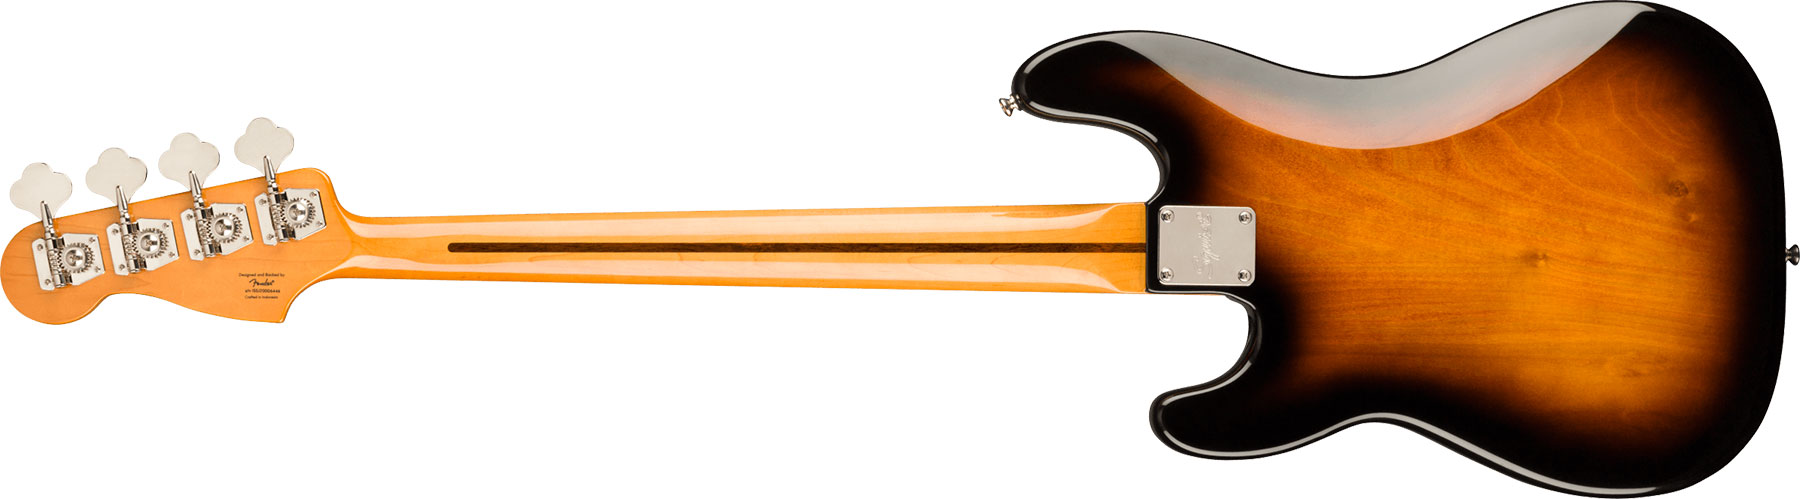 Squier Precision Bass Late '50s Classic Vibe Fsr Ltd Mn - 2-color Sunburst - Basse Électrique Solid Body - Variation 1